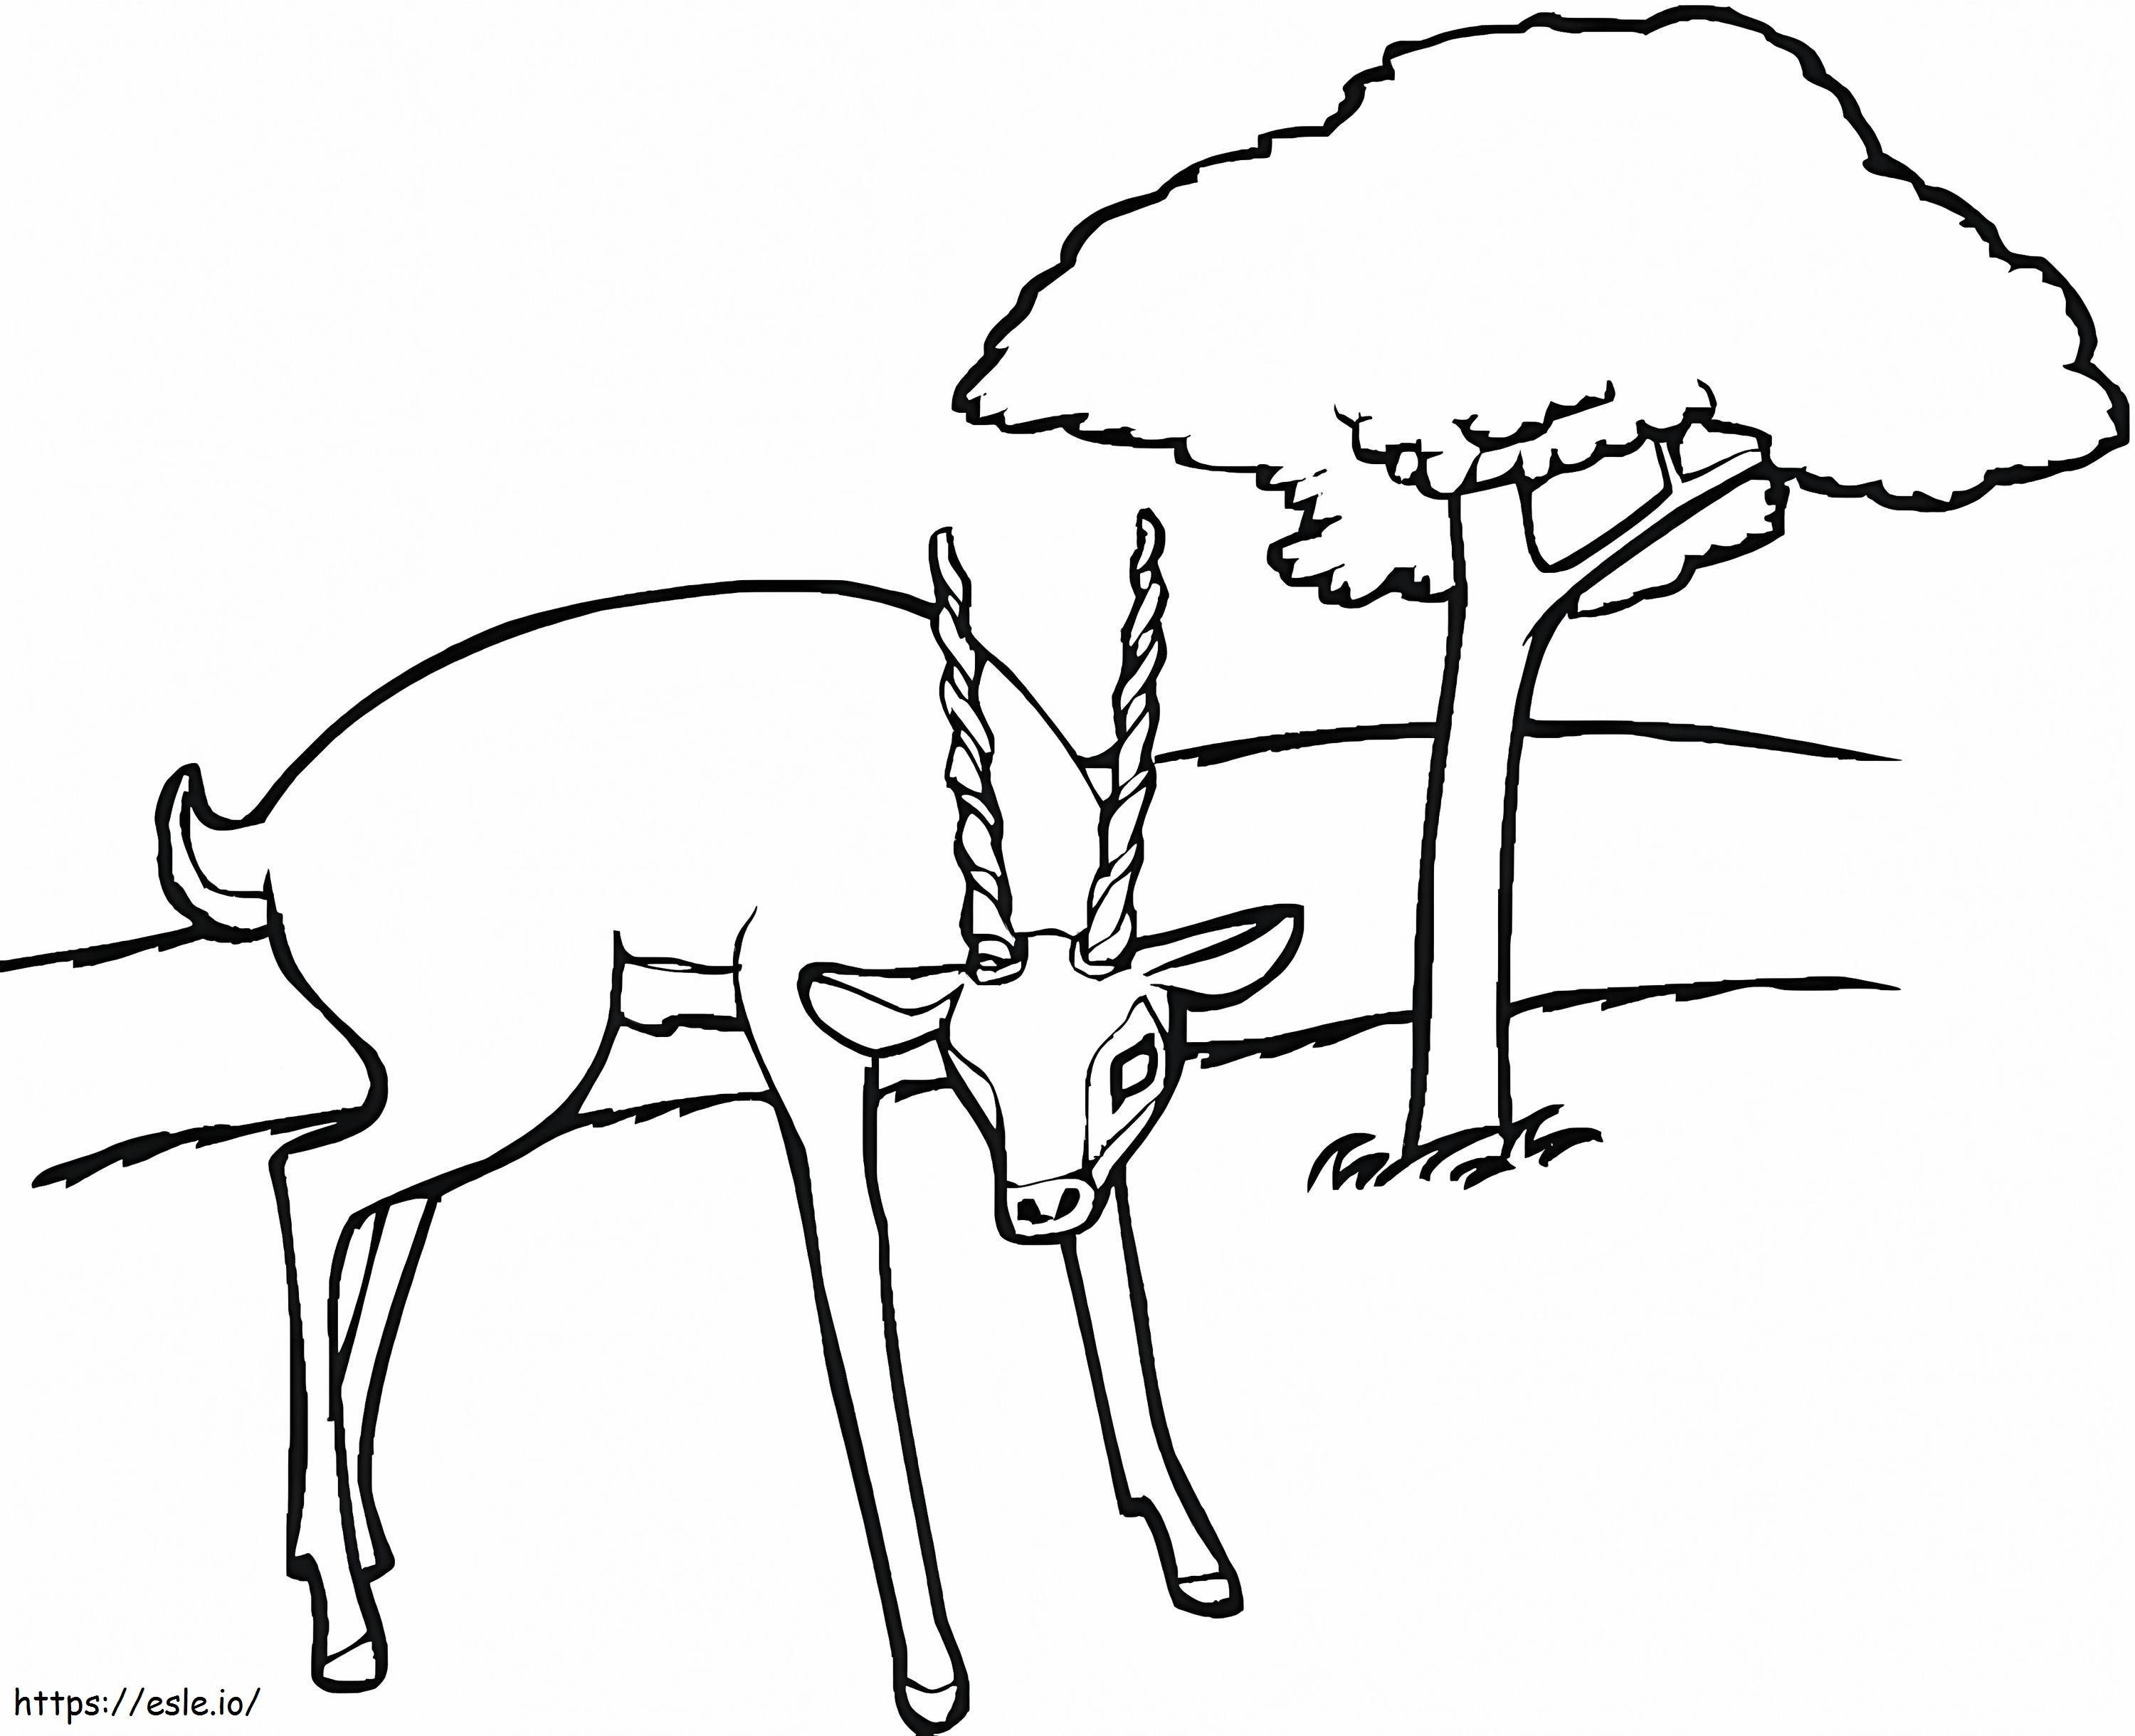 Coloriage Antilope dans la forêt à imprimer dessin